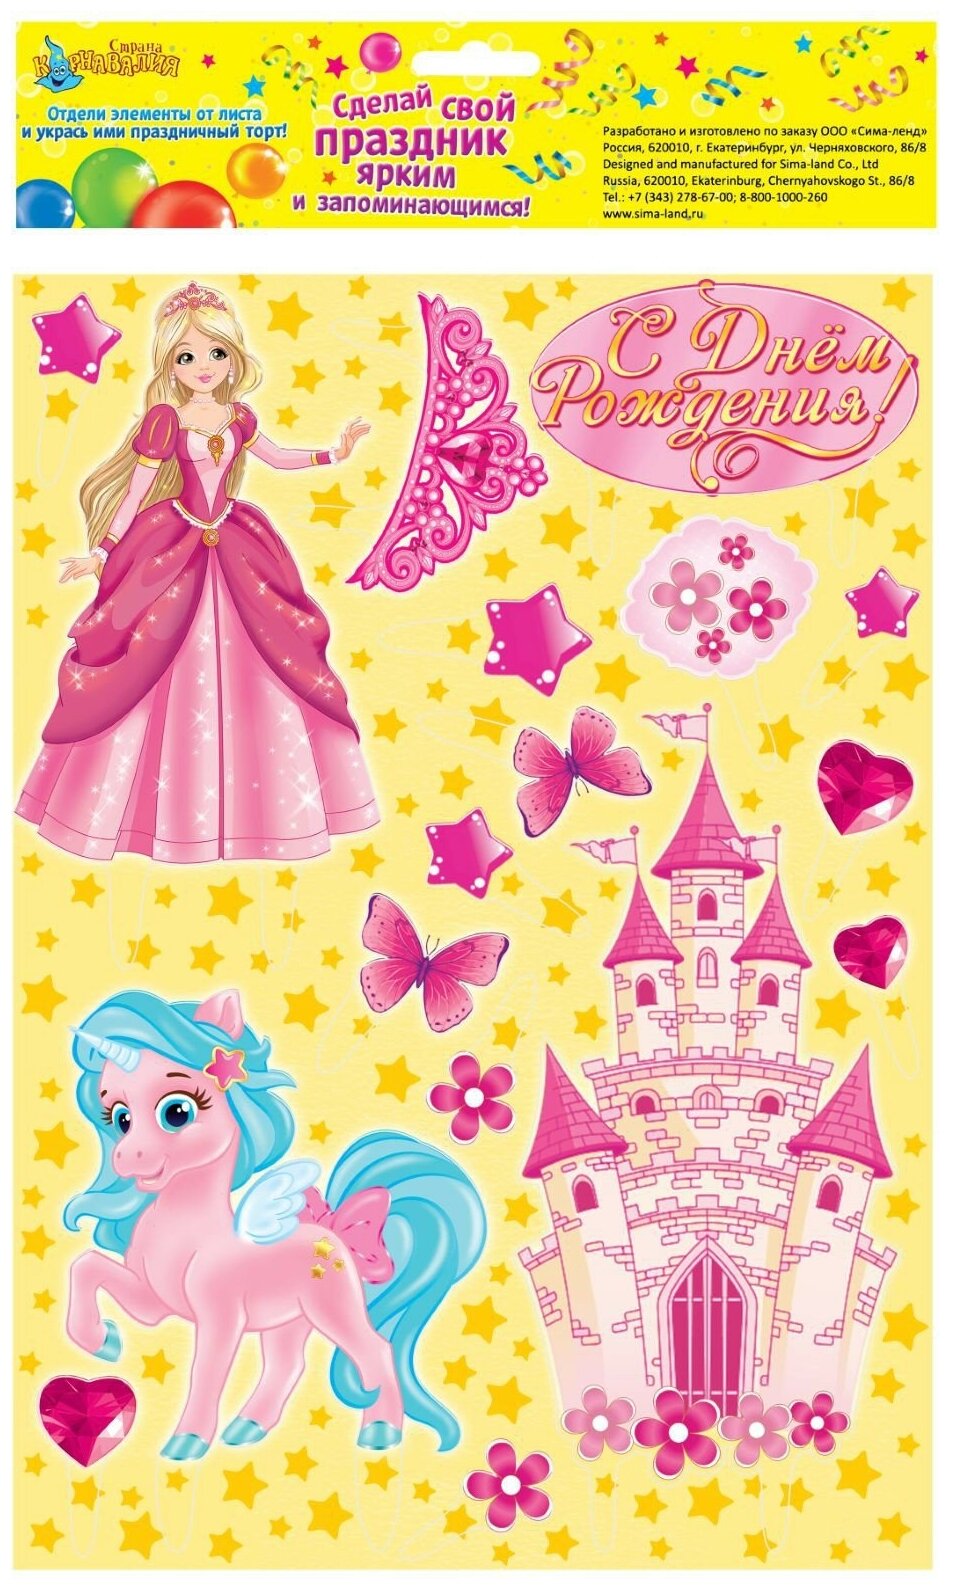 Набор для украшения торта "С днем рождения", 17 штук, картон, формат: А4, принцесса, для девочек, цвет розовый